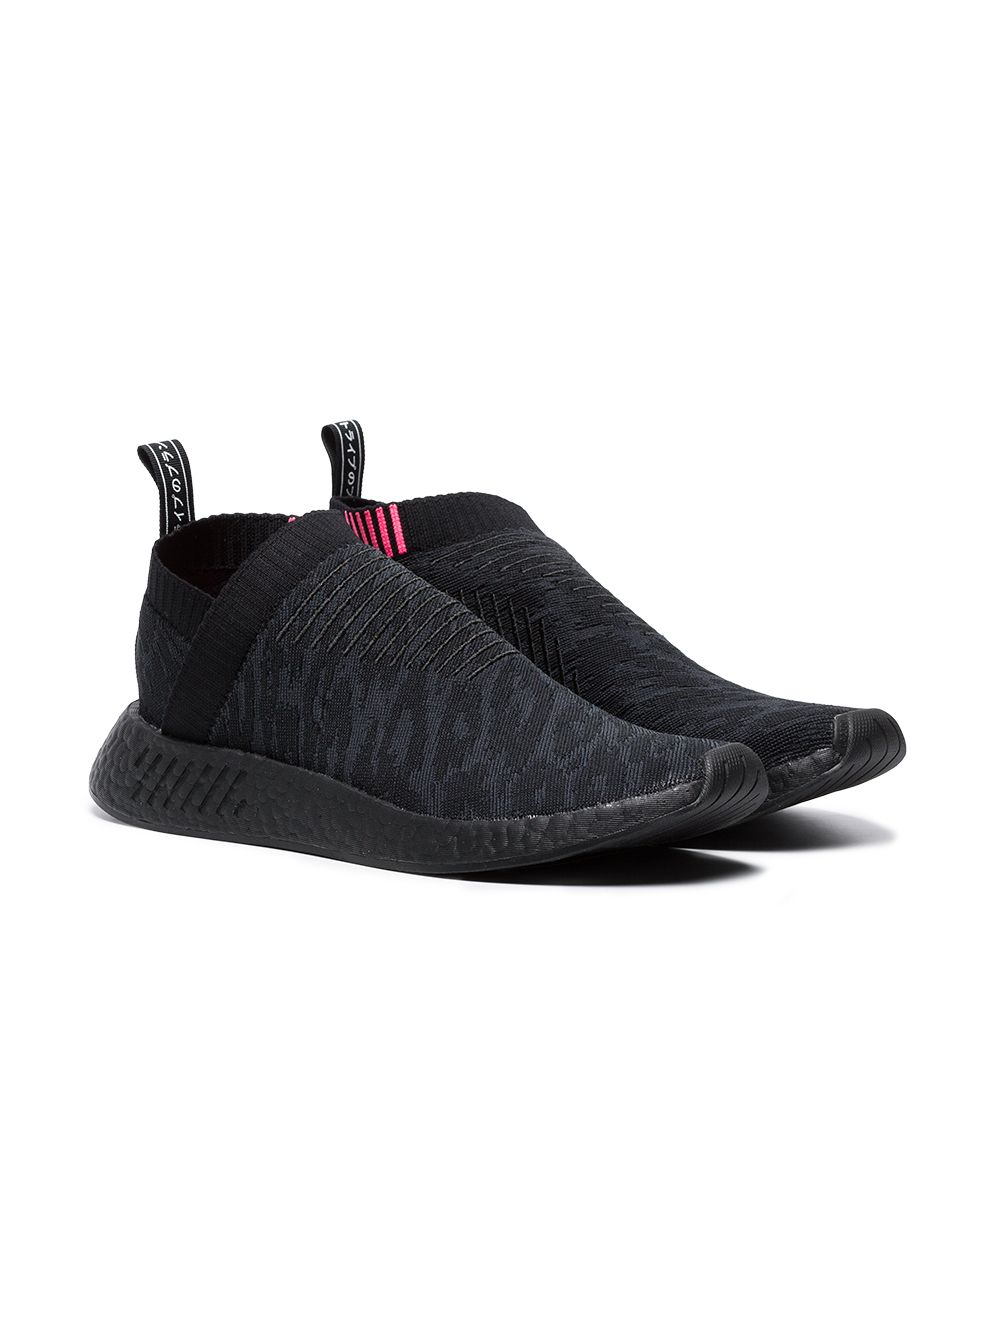 Adidas Black Sock Farfetch